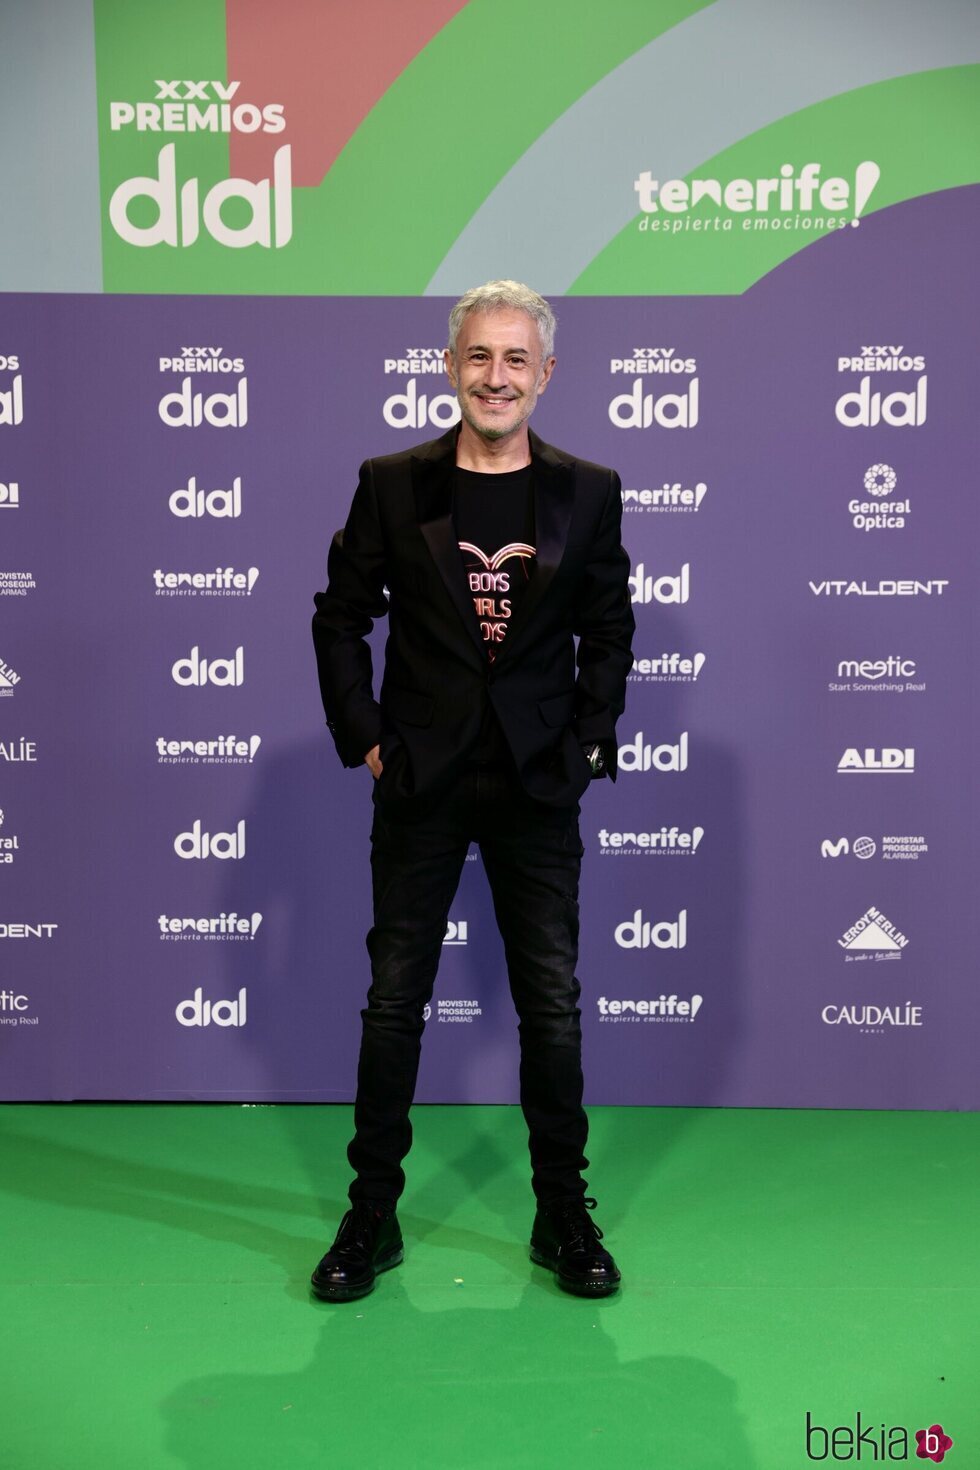 Sergio Dalma en los Premios Cadena Dial 2021